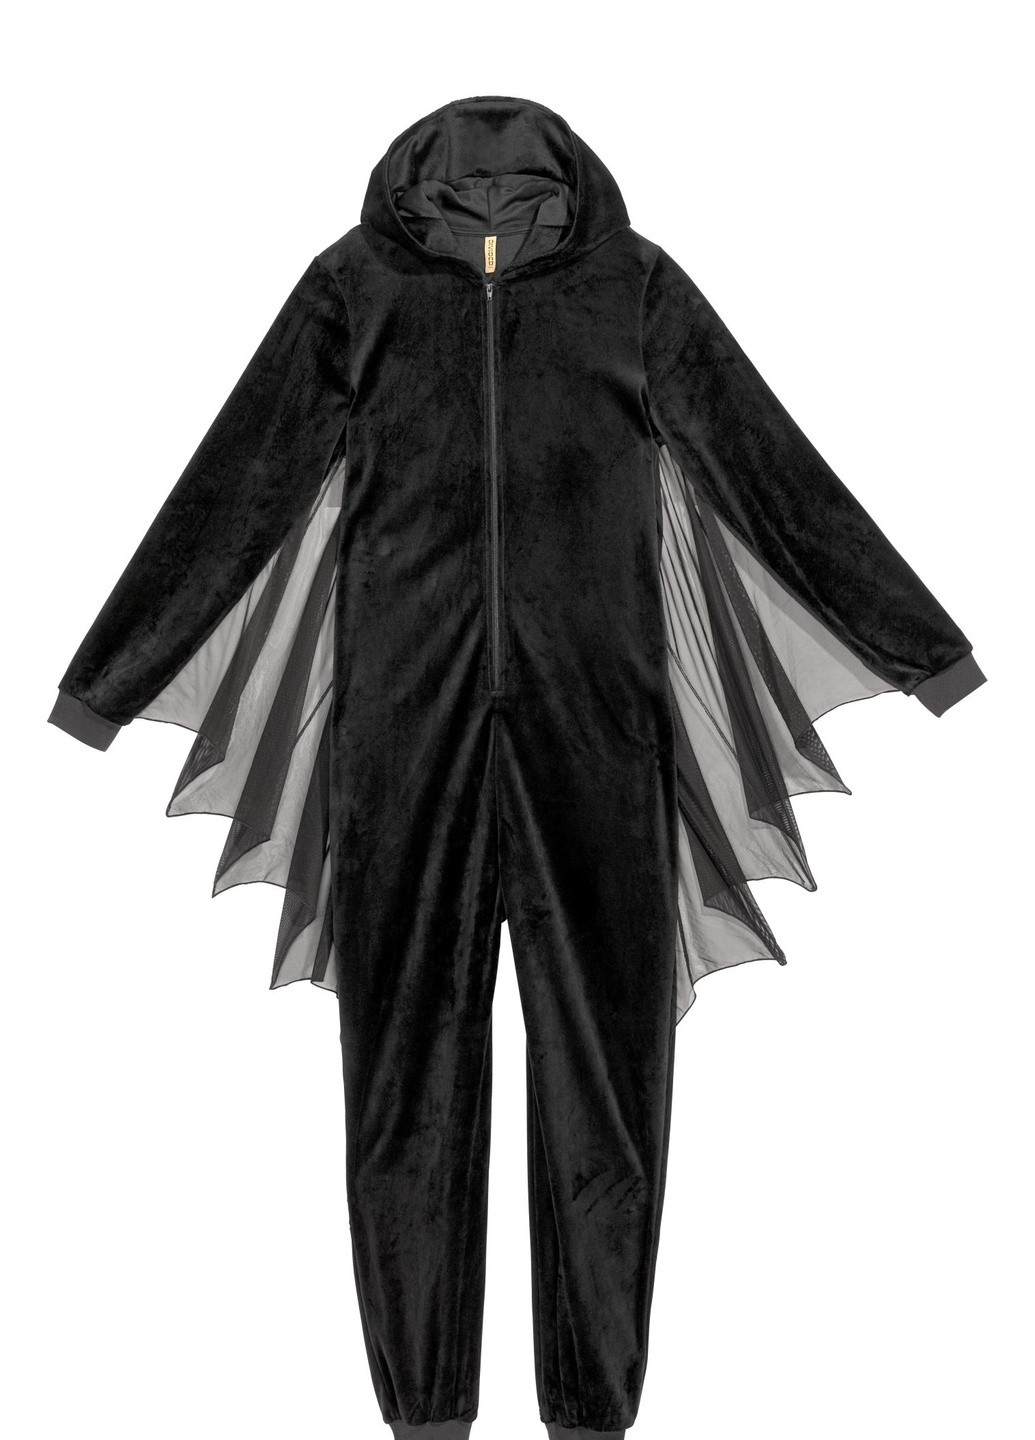 Карнавальный костюм Летучая мышь H&M однотонный чёрный карнавальный полиэстер